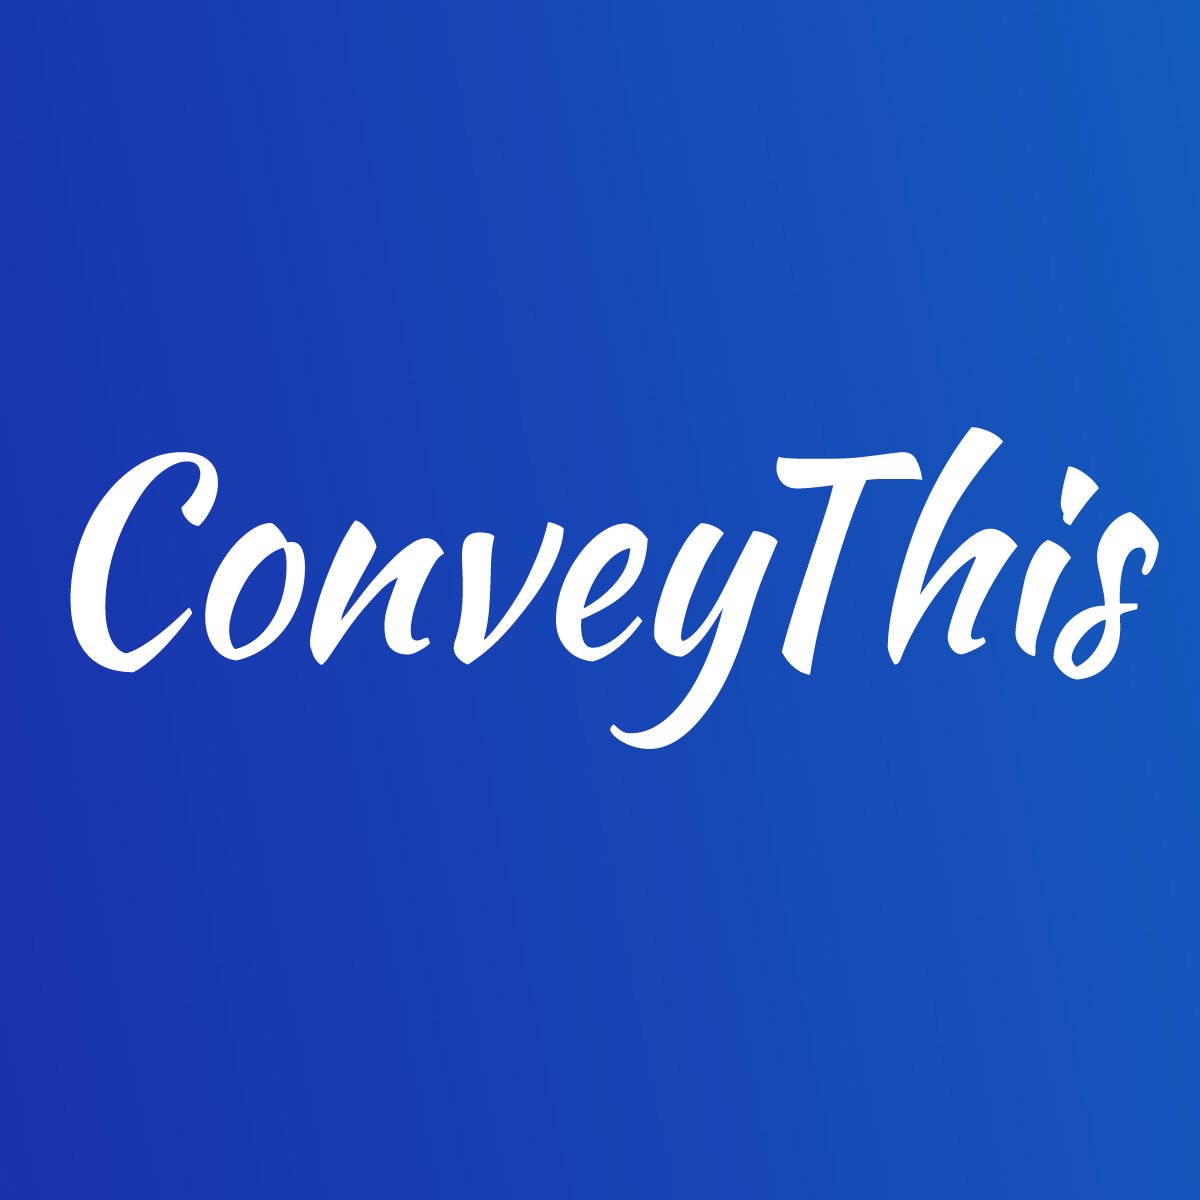 ConveyThis - отзывы, цена, альтернативы (аналоги, сравнения, стоимость услуг)